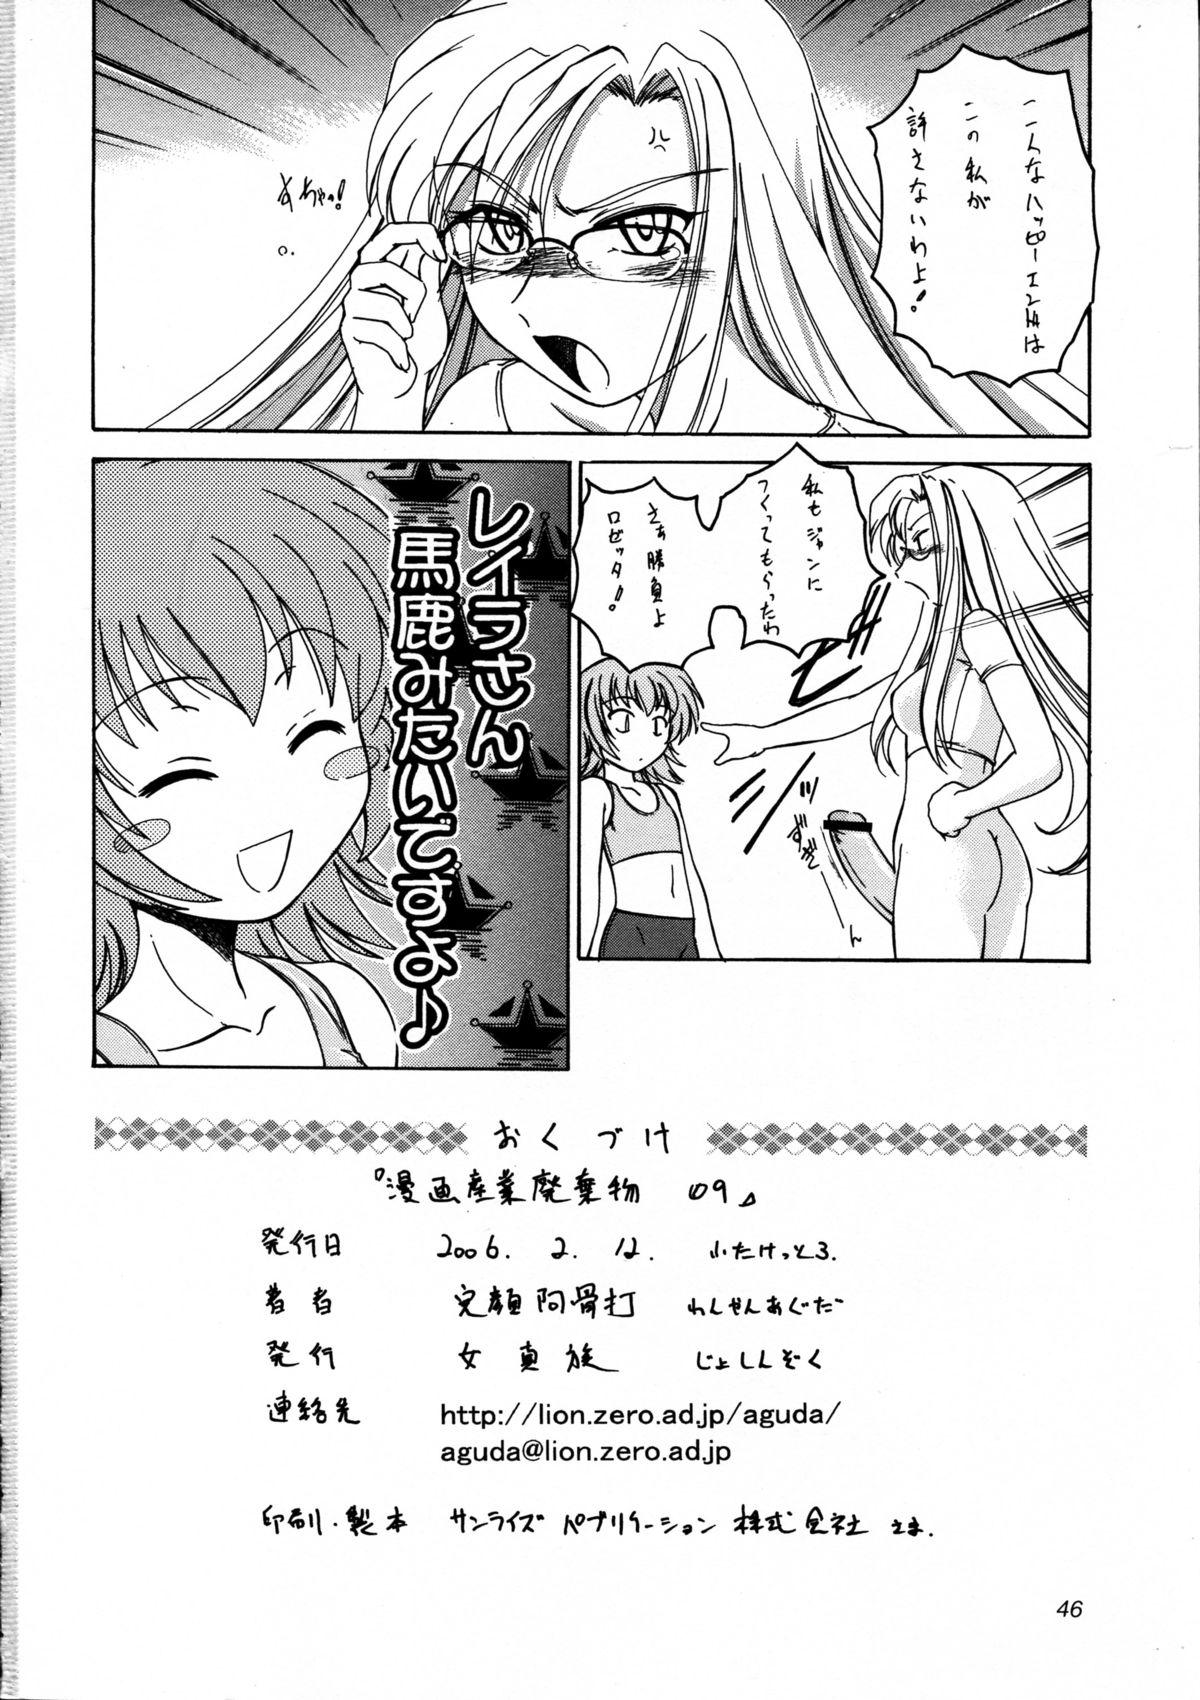 Hot Naked Girl Manga Sangyou Haikibutsu 09 - Kaleido star Petite - Page 46